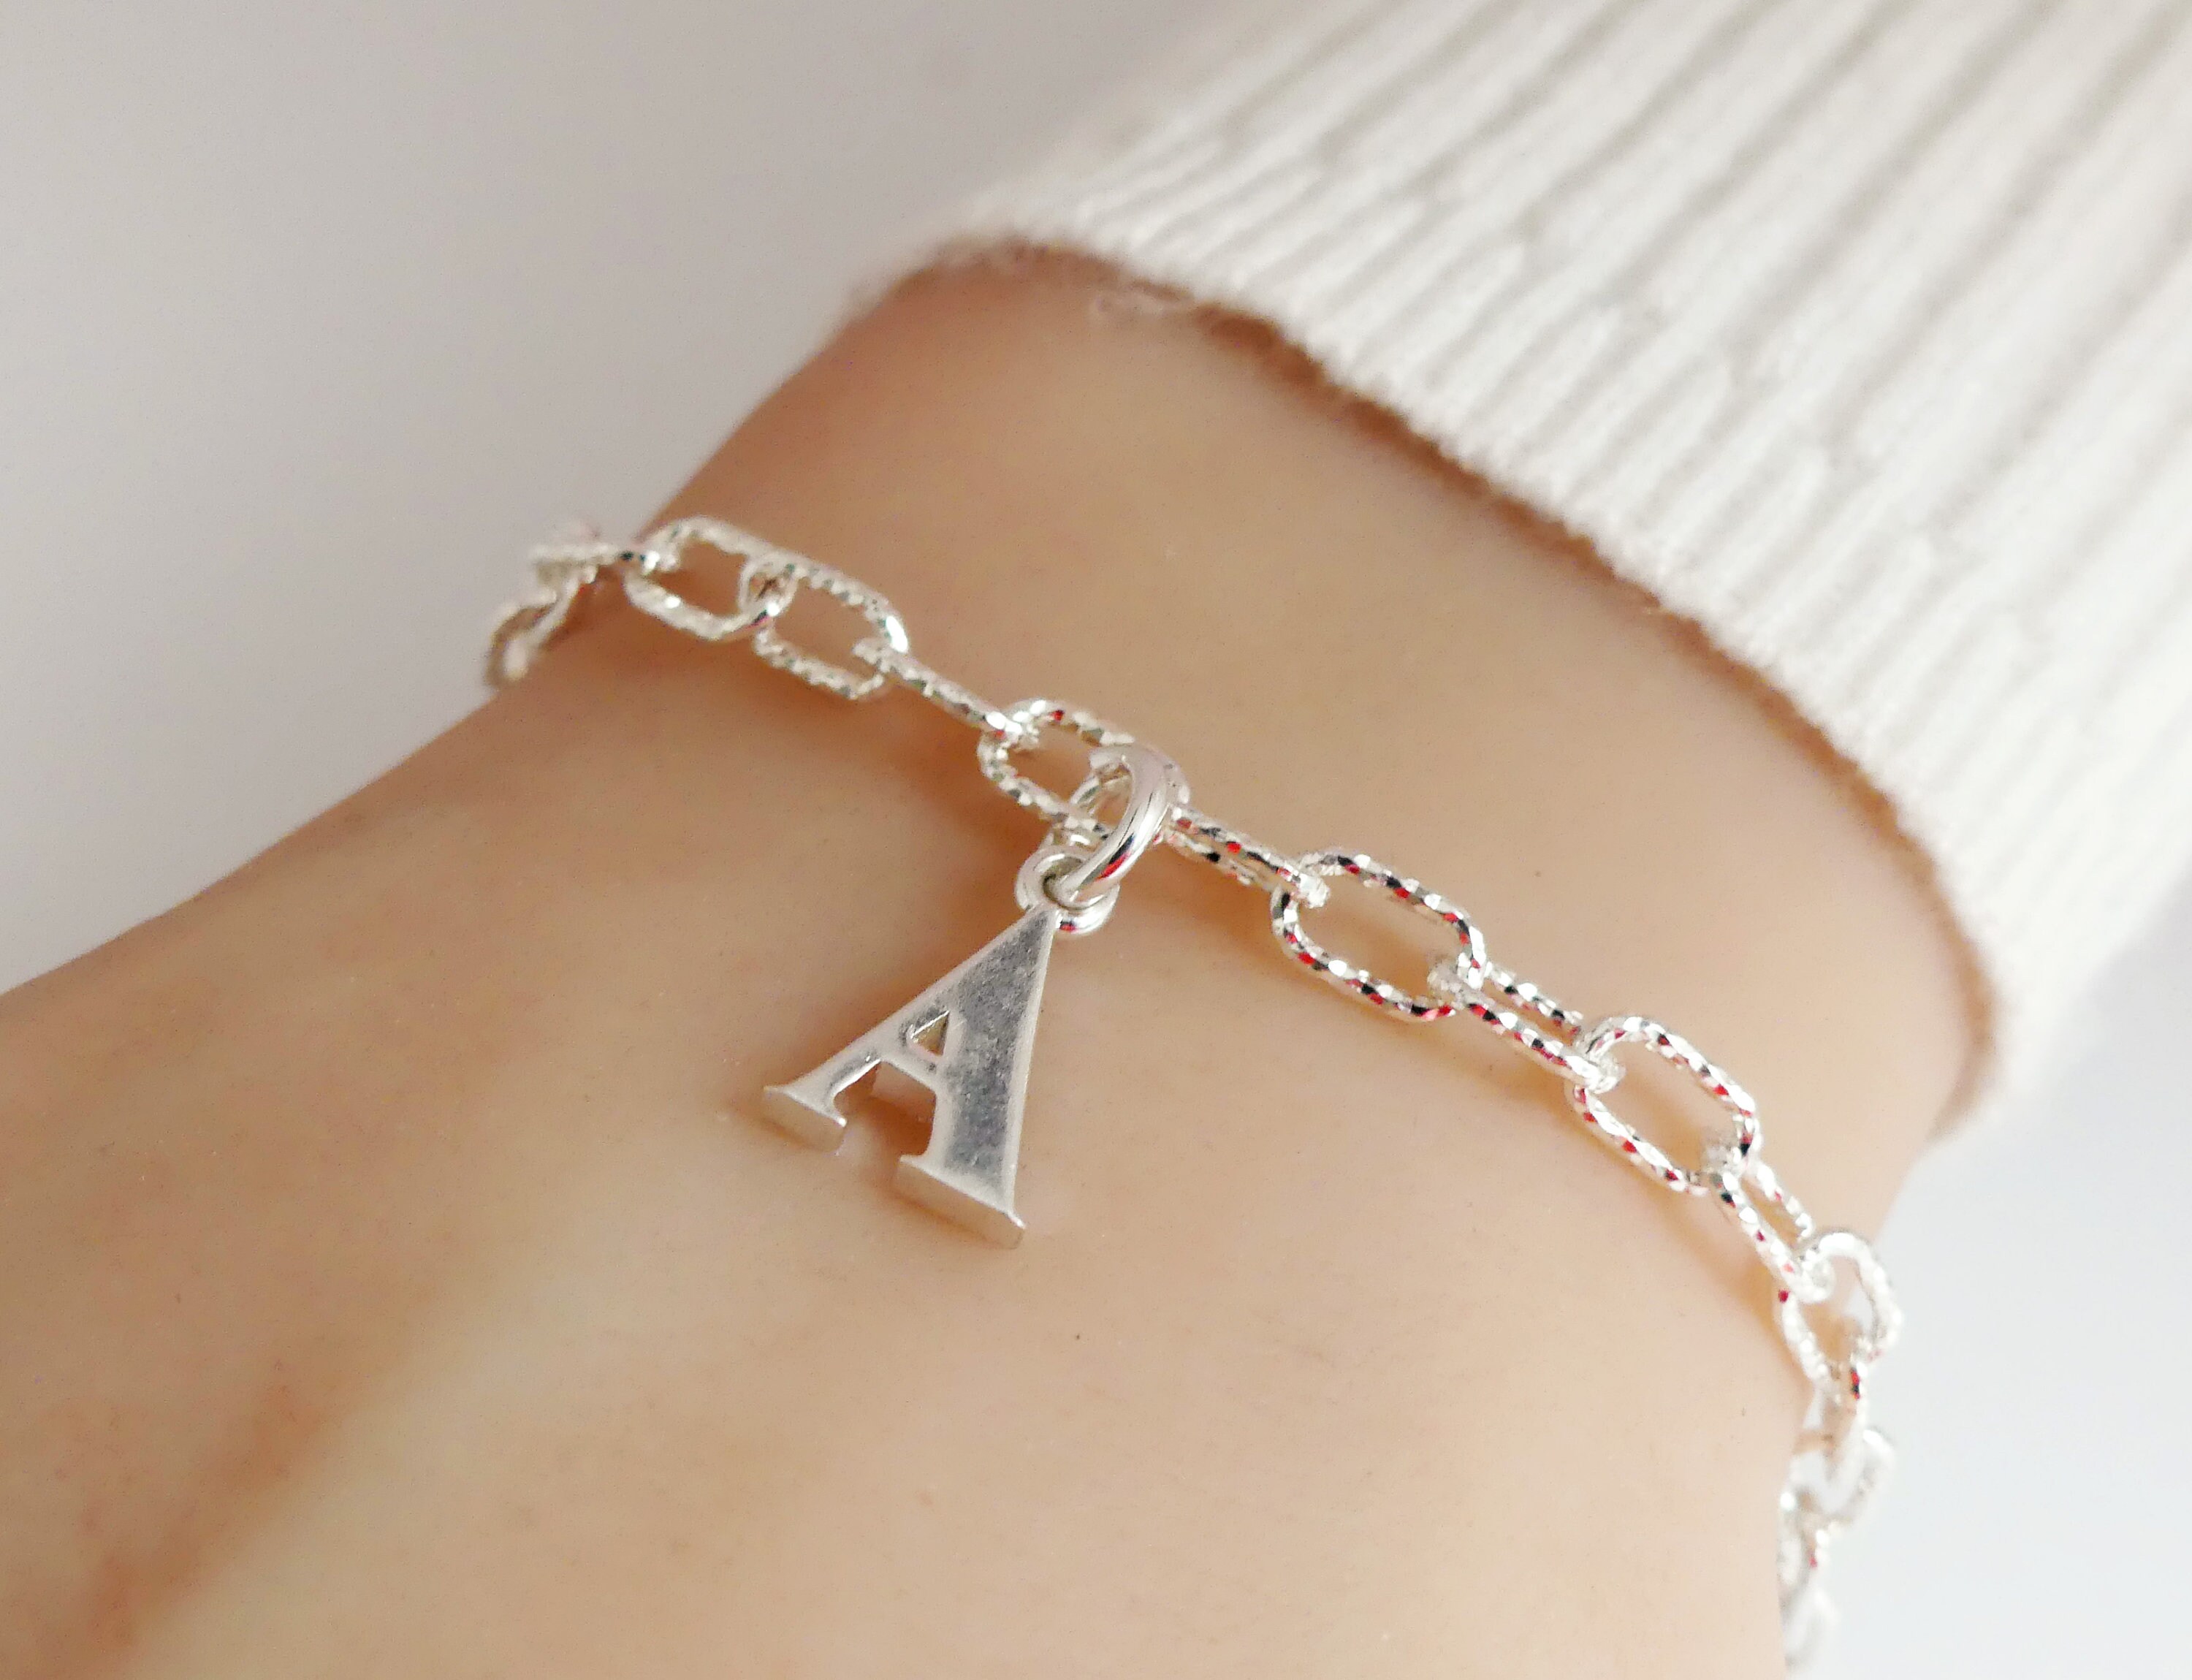 Silver Crystal Letter N Bracelet - One Size